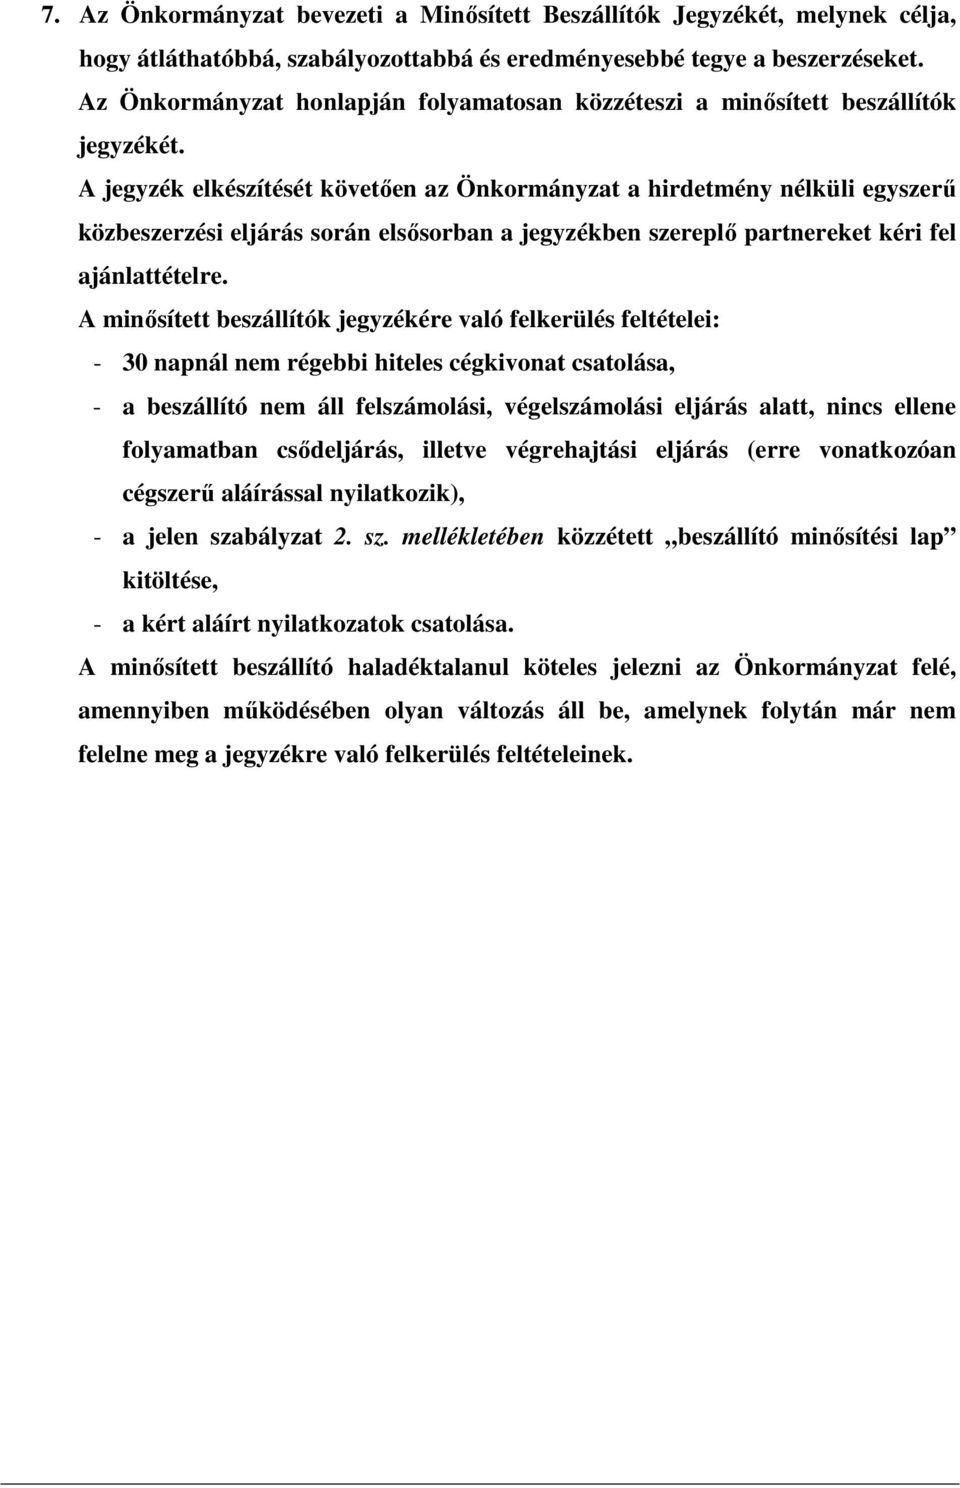 A jegyzék elkészítését követıen az Önkormányzat a hirdetmény nélküli egyszerő közbeszerzési eljárás során elsısorban a jegyzékben szereplı partnereket kéri fel ajánlattételre.